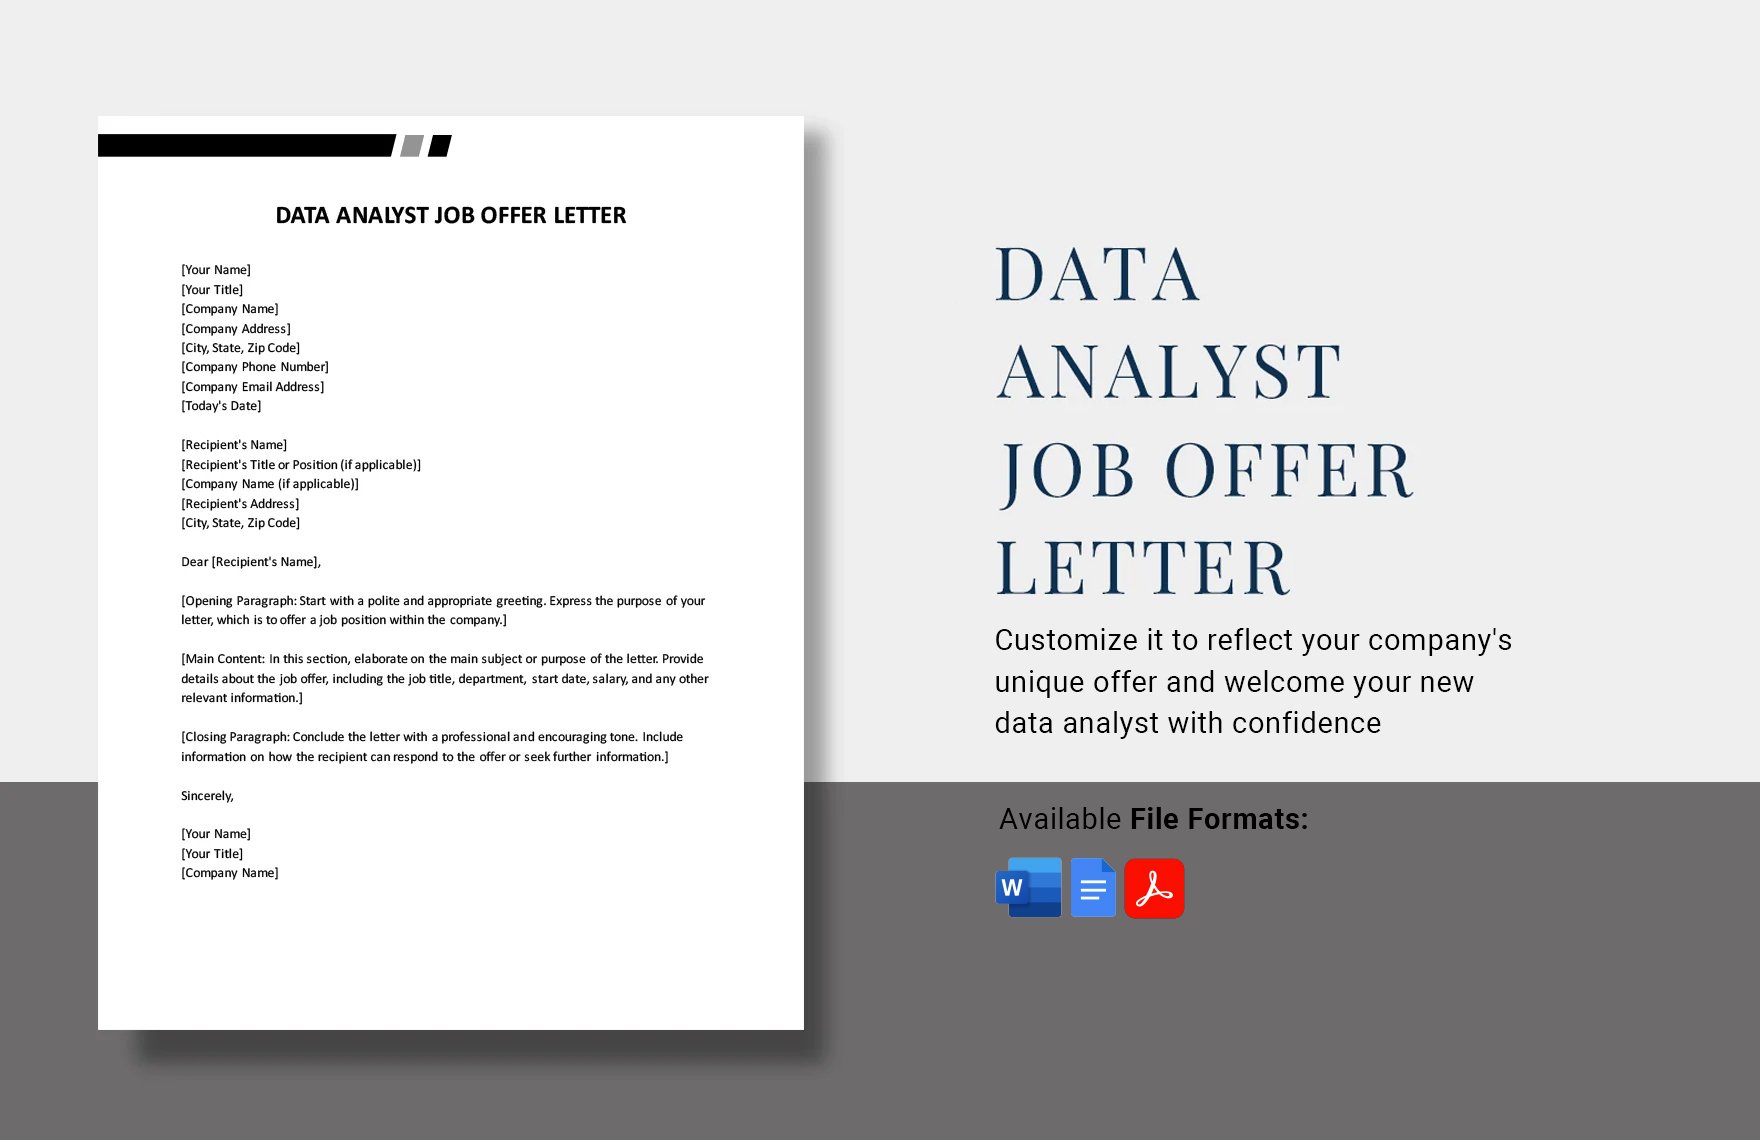 Data Analyst Job Offer Letter